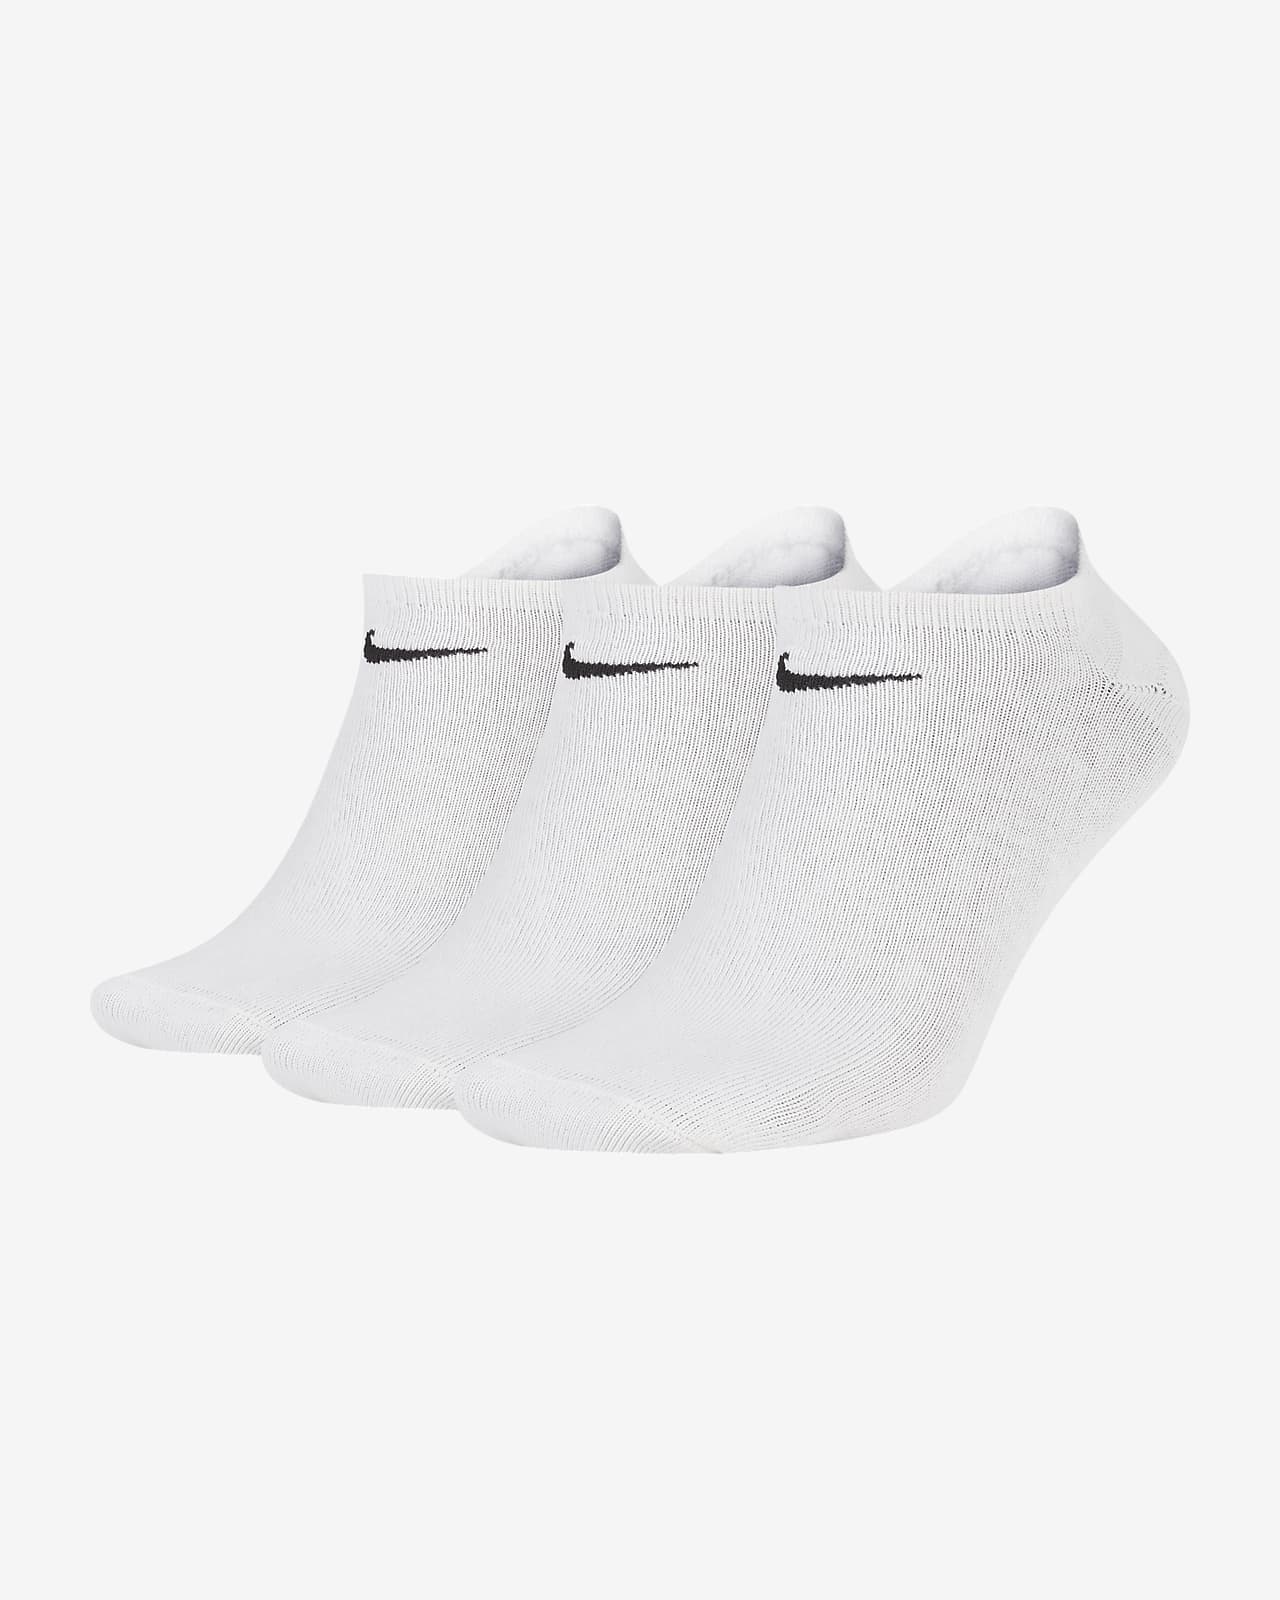 Χαμηλές κάλτσες προπόνησης Nike Lightweight (τρία ζευγάρια)